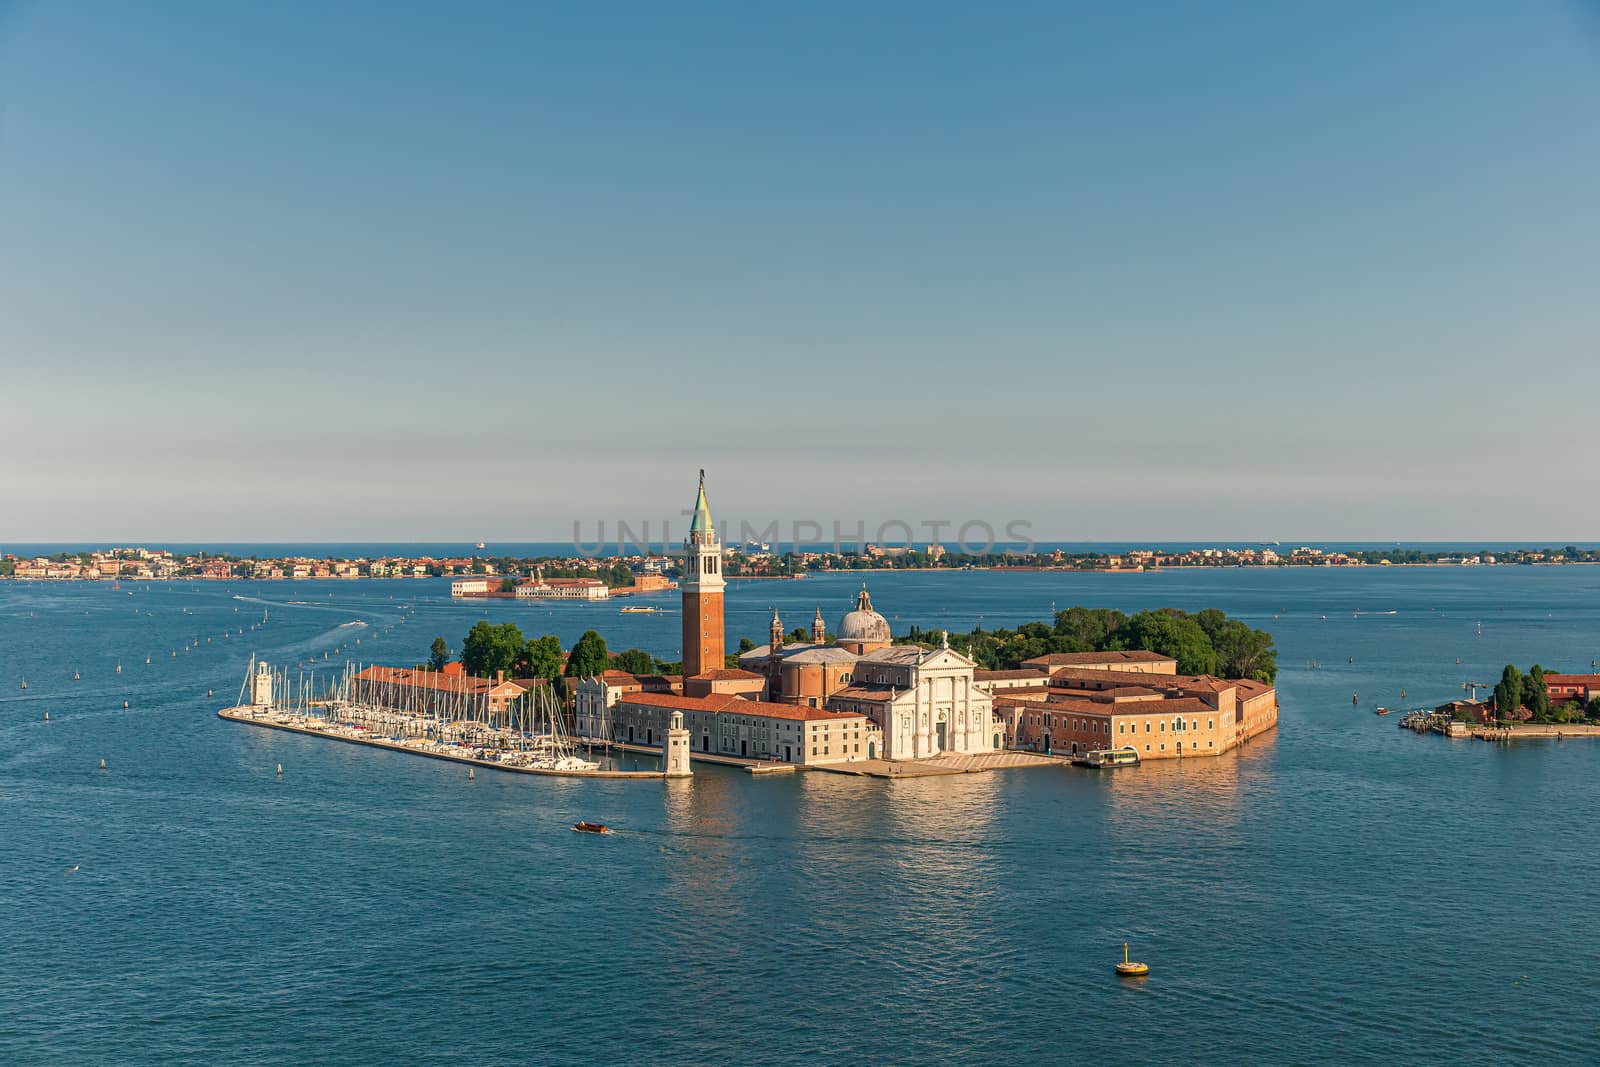 San Giorgio Maggiore islet in Venice by COffe